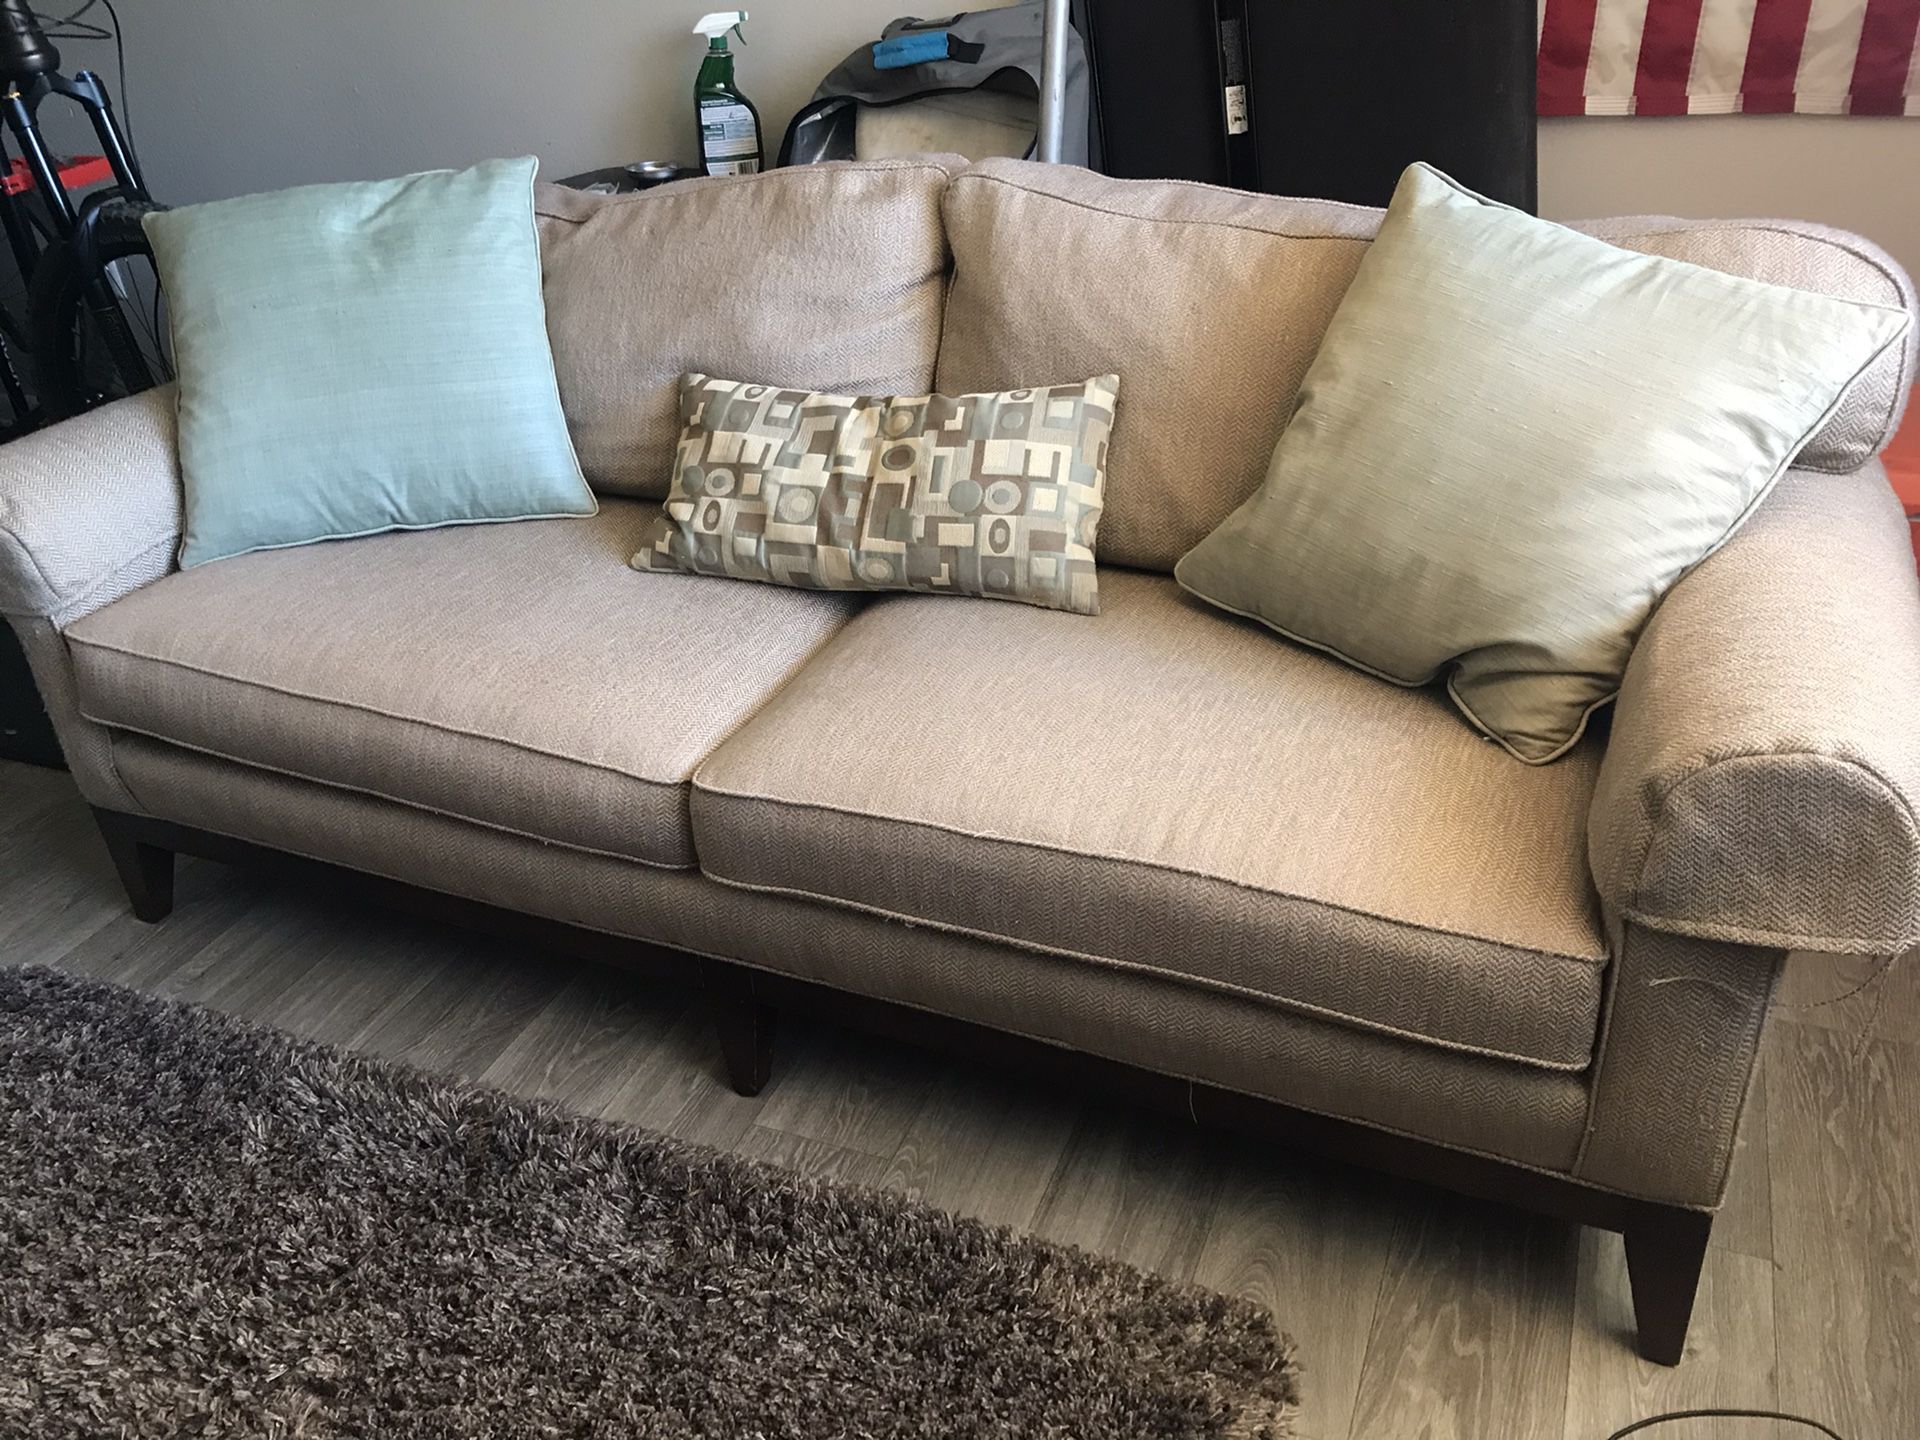 6’ Tan Cloth Sofa Couch Pillows